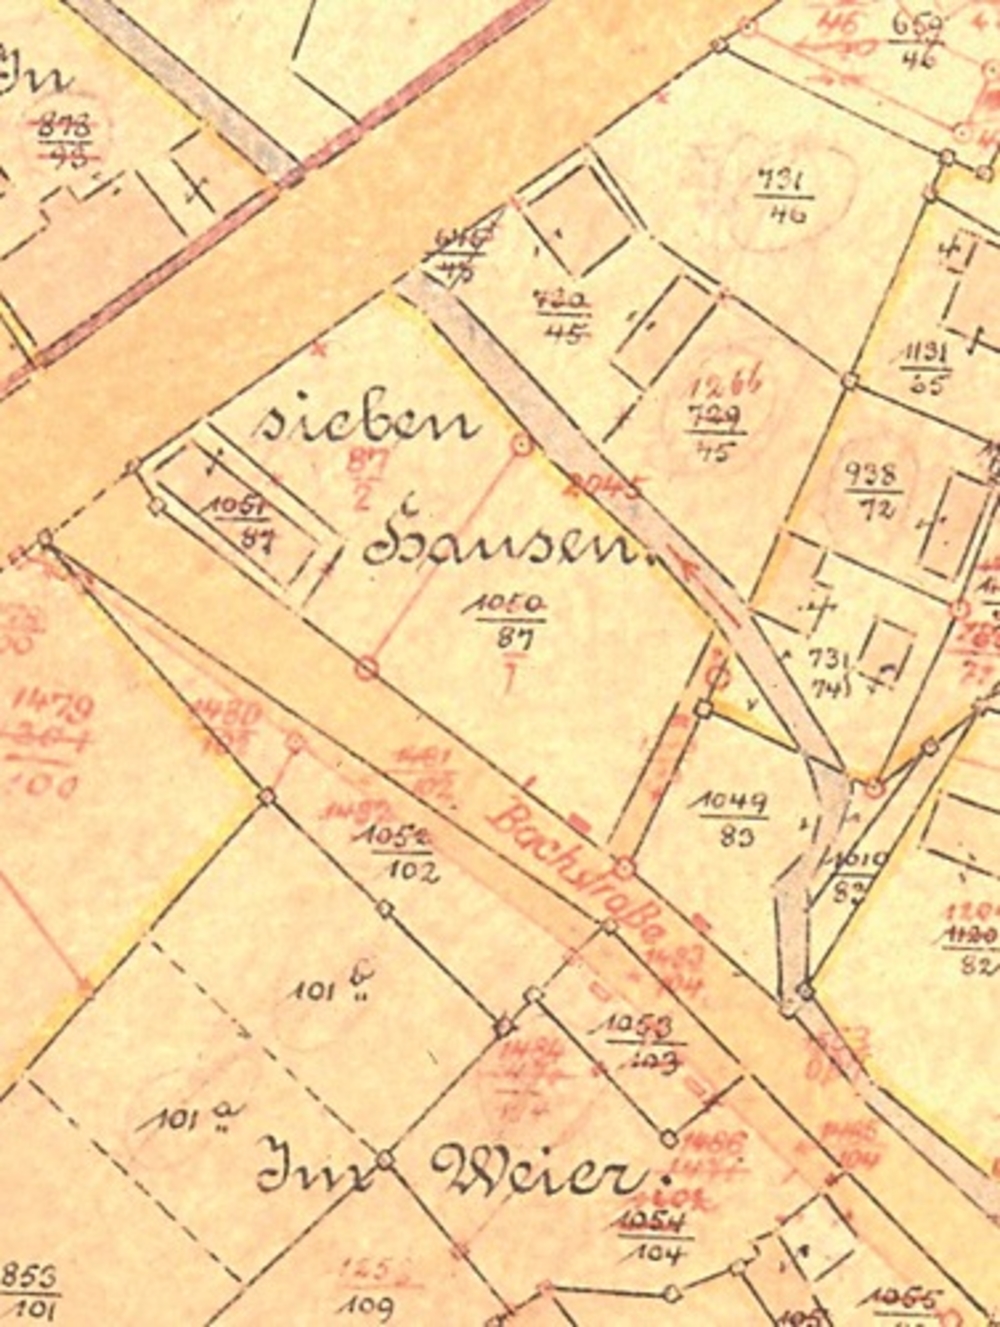 Grundstücke der Familie Hoffmann an der Bachstraße: Ausschnitt aus der Katasterkarte von 1901 (Landesarchiv Düsseldorf, Reg. Köln, Kataster K Gemarkung Lohmar)